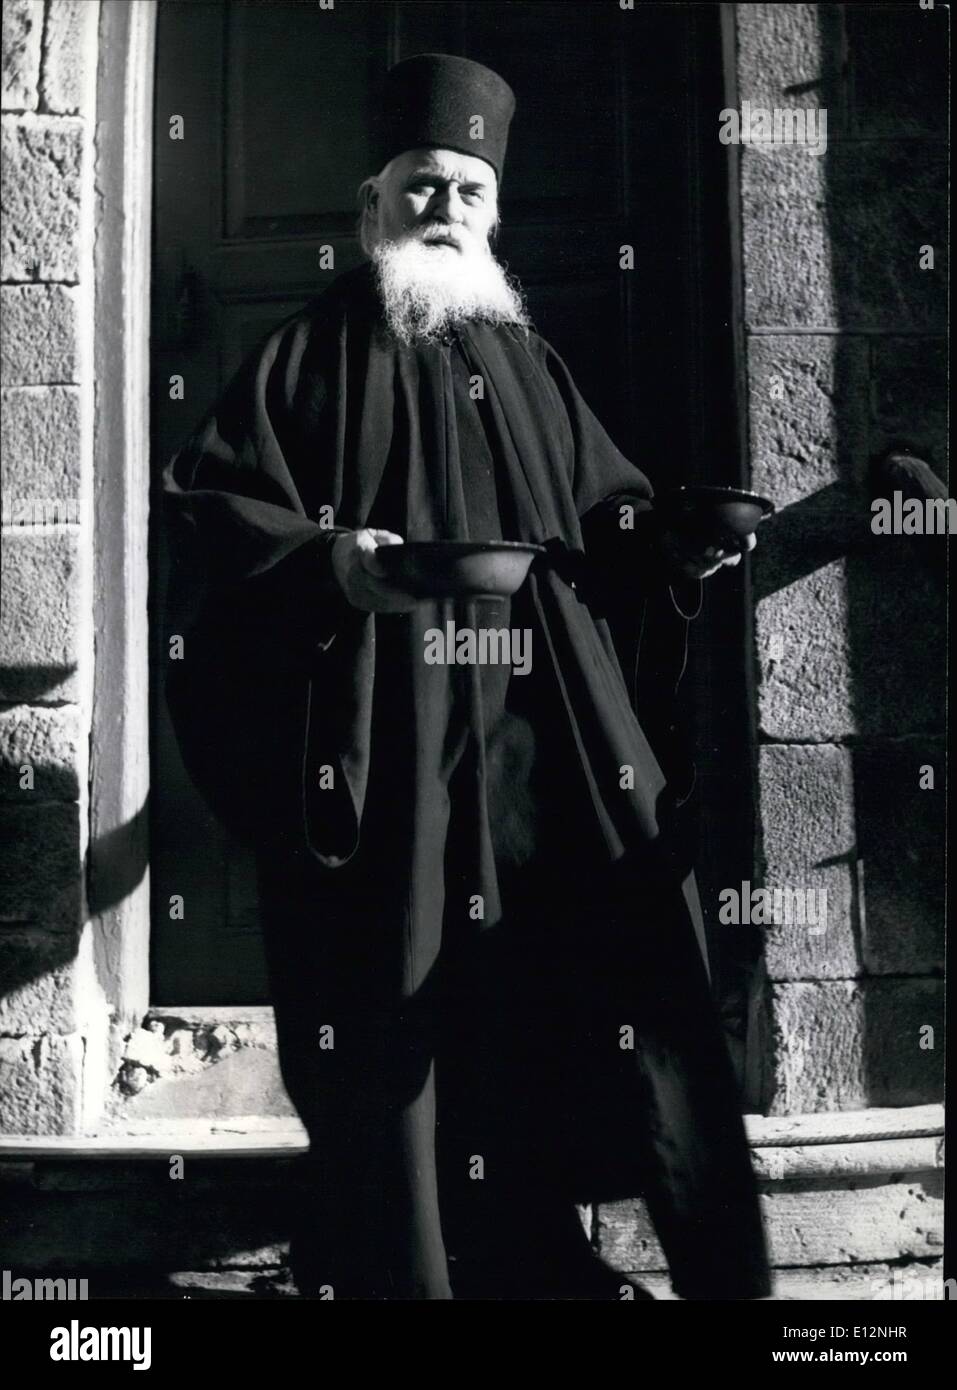 24. Februar 2012 - Republik Athos-Kloster: im Austausch für die Dienstleistungen, die sie in der Gemeinschaft die Mönche der idiorrhythmische Klöster bekommen Zahlung in Bar und Rationen machen, ihre eigene Küche zu tun. Dieser Mönch hat gerade seine wöchentliche Ration des Öls. Stockfoto